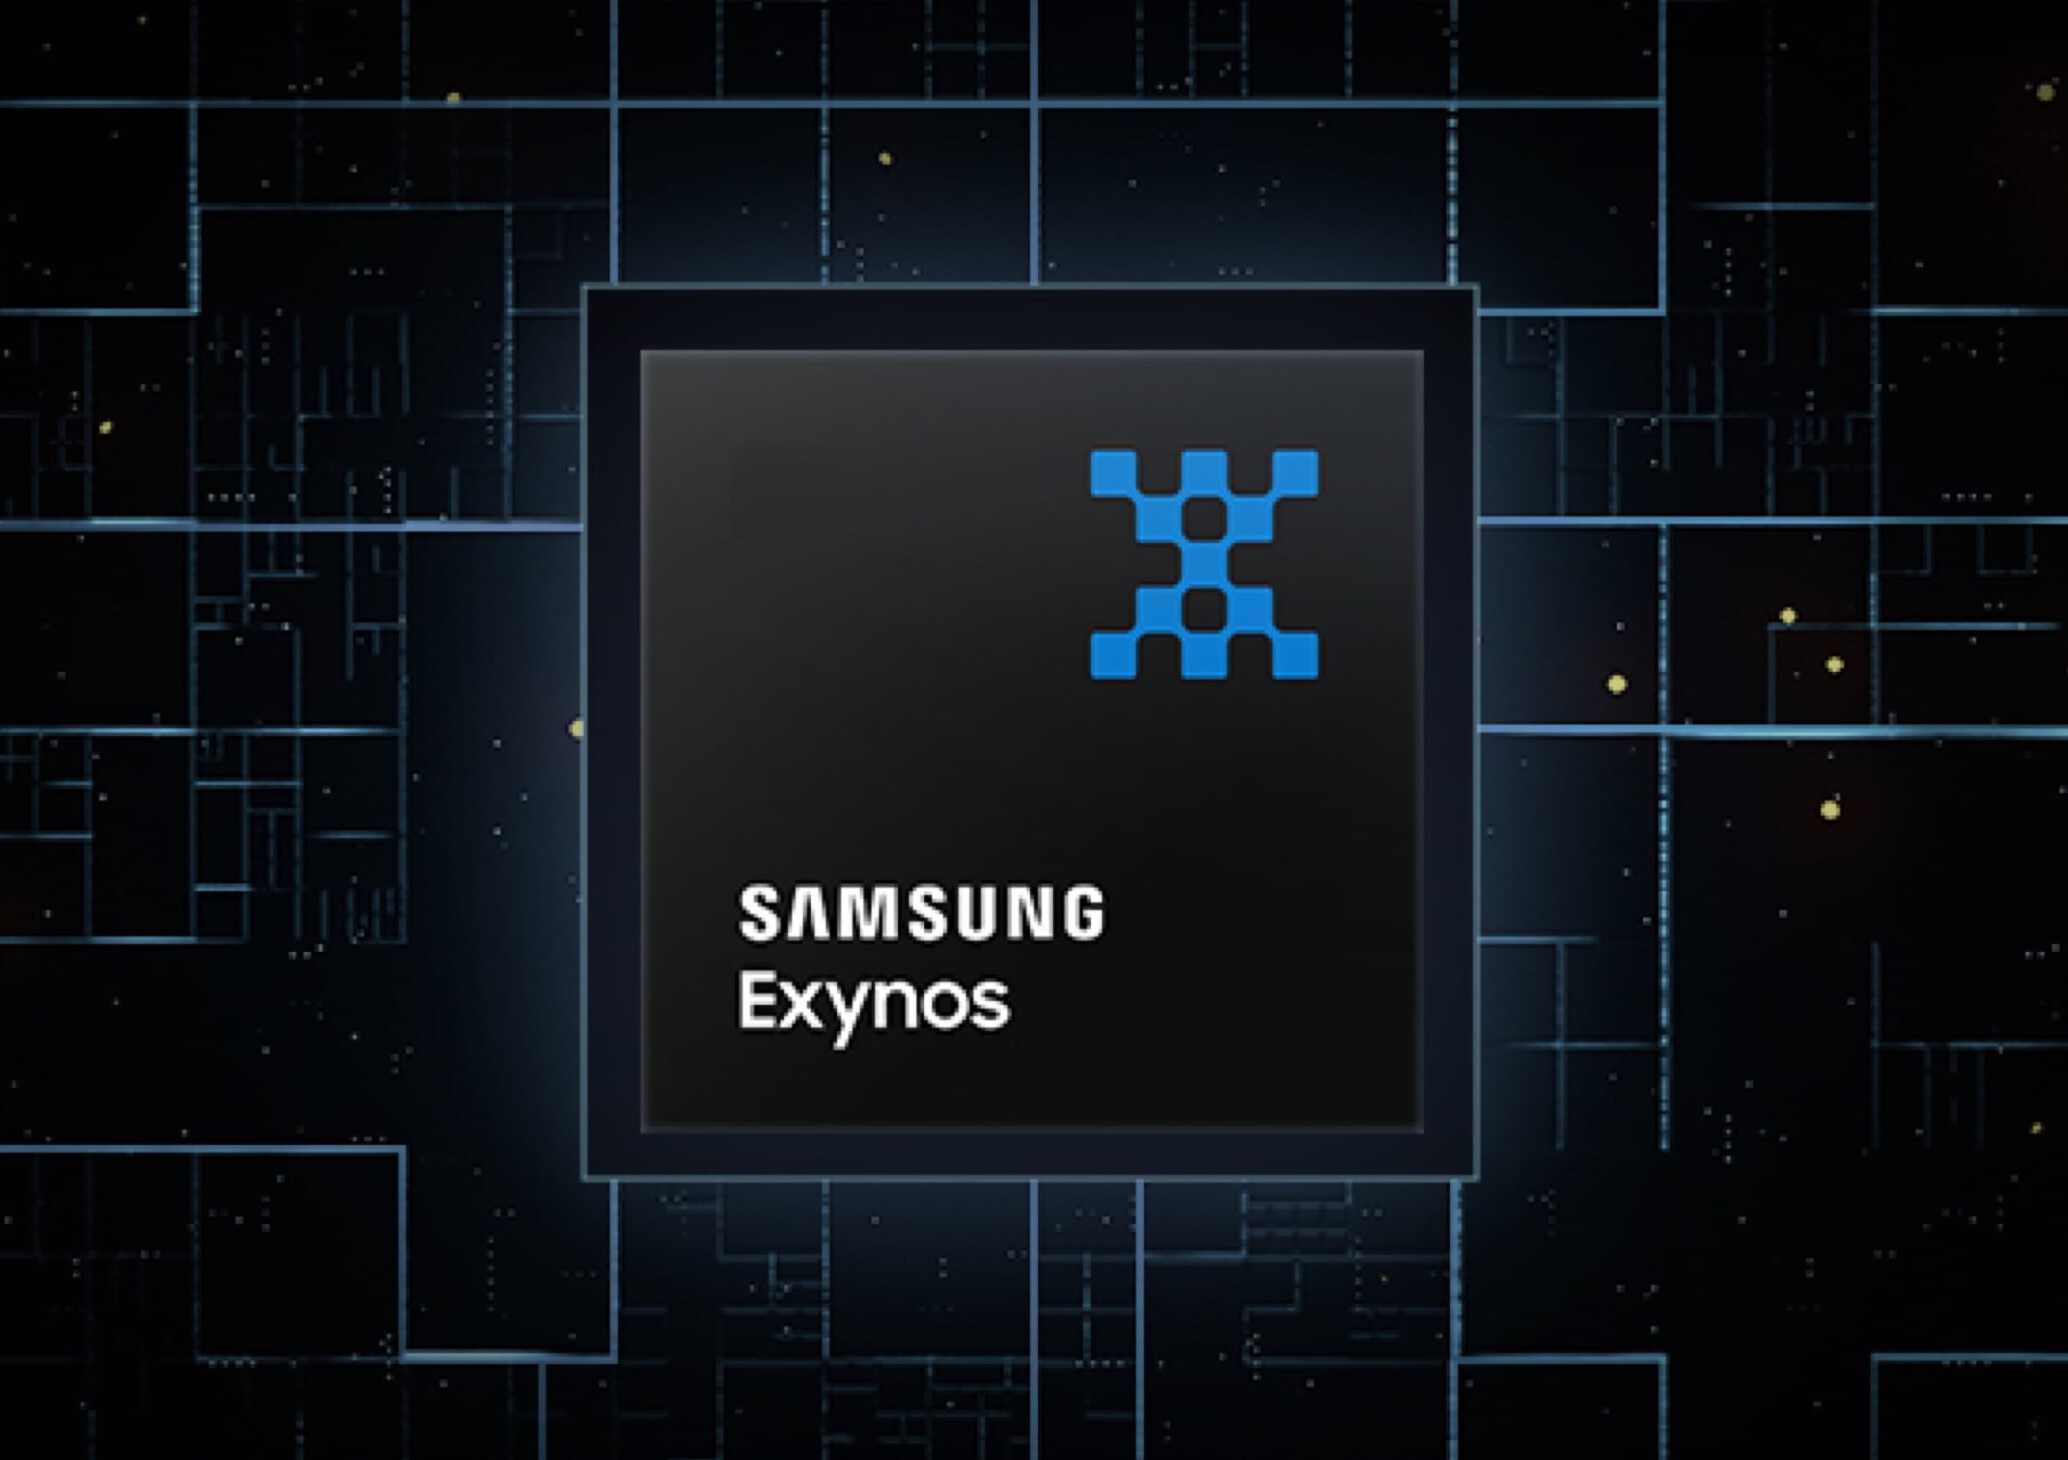 Se rumorea que la serie Galaxy S25 de Samsung ejecutará Exynos a nivel mundial